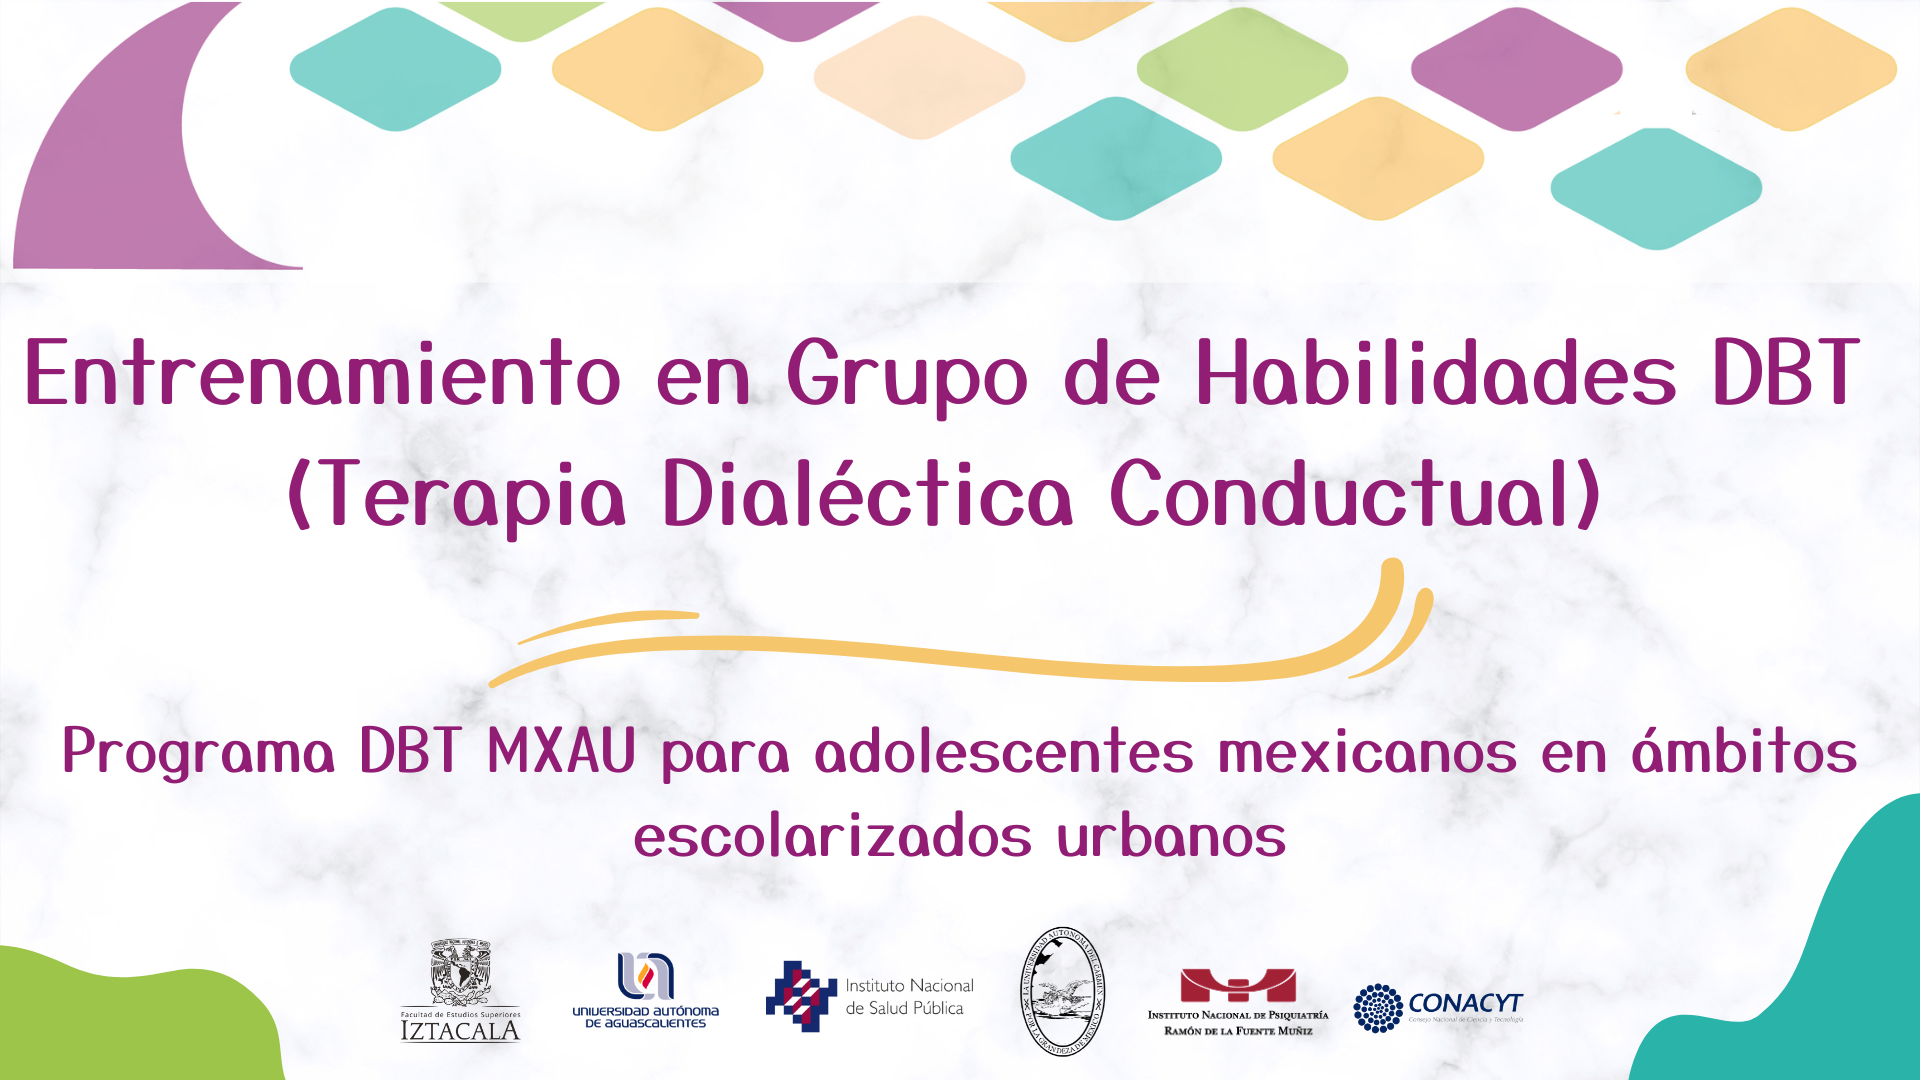 Entrenamiento en Grupo de Habilidades DBT (Terapia Dialéctica Conductual).  Programa DBT MXAU para adolescentes mexicanos en ámbitos escolarizados urbanos.